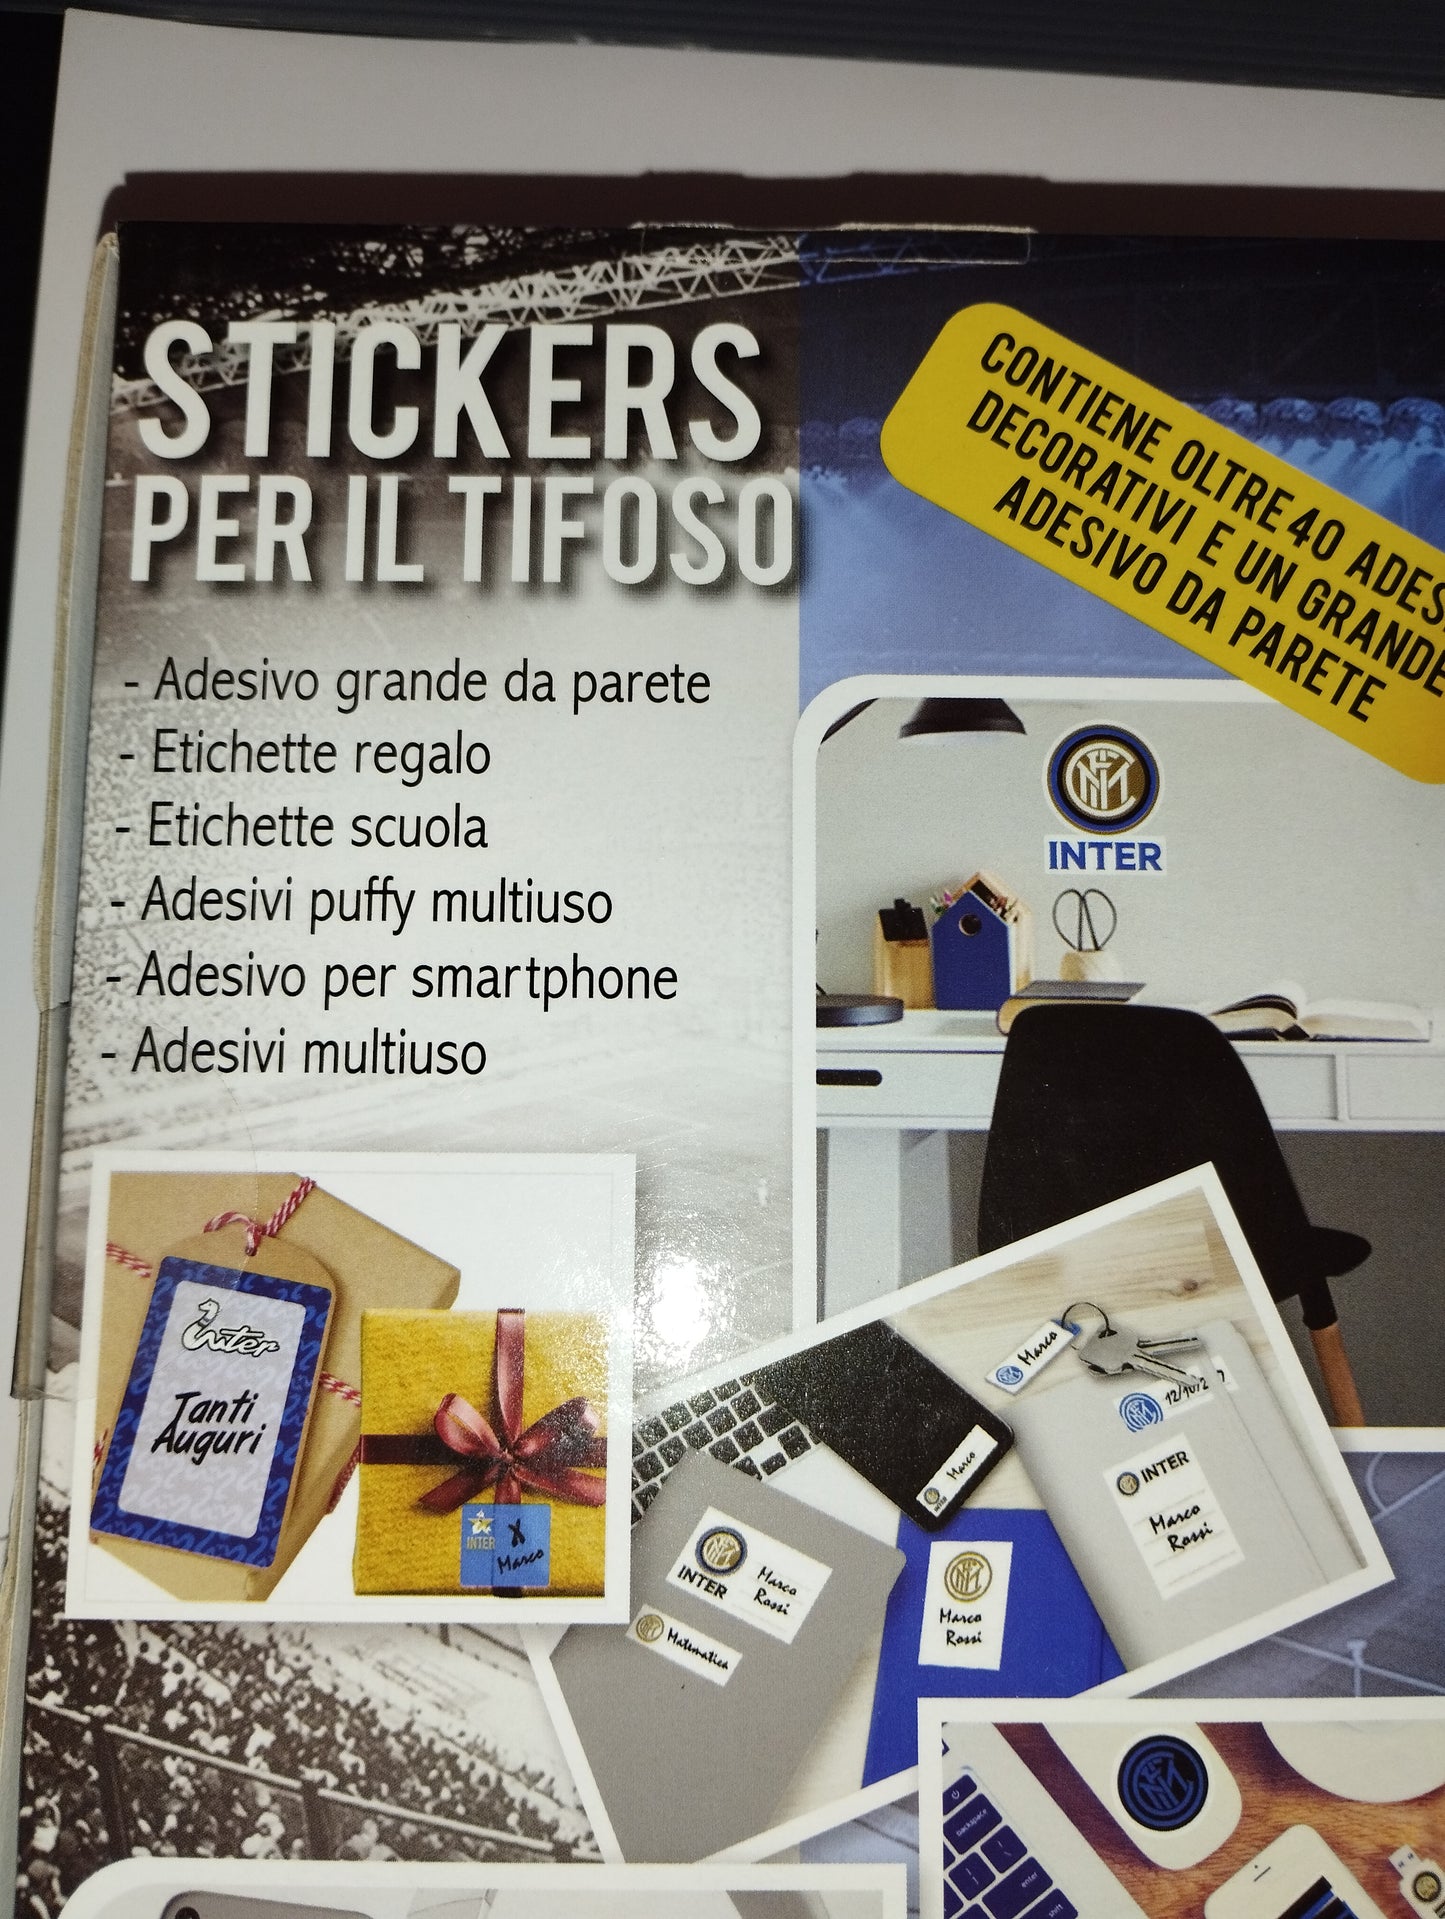 Inter Cofanetto Stickers Per Il Tifoso Limited Edition